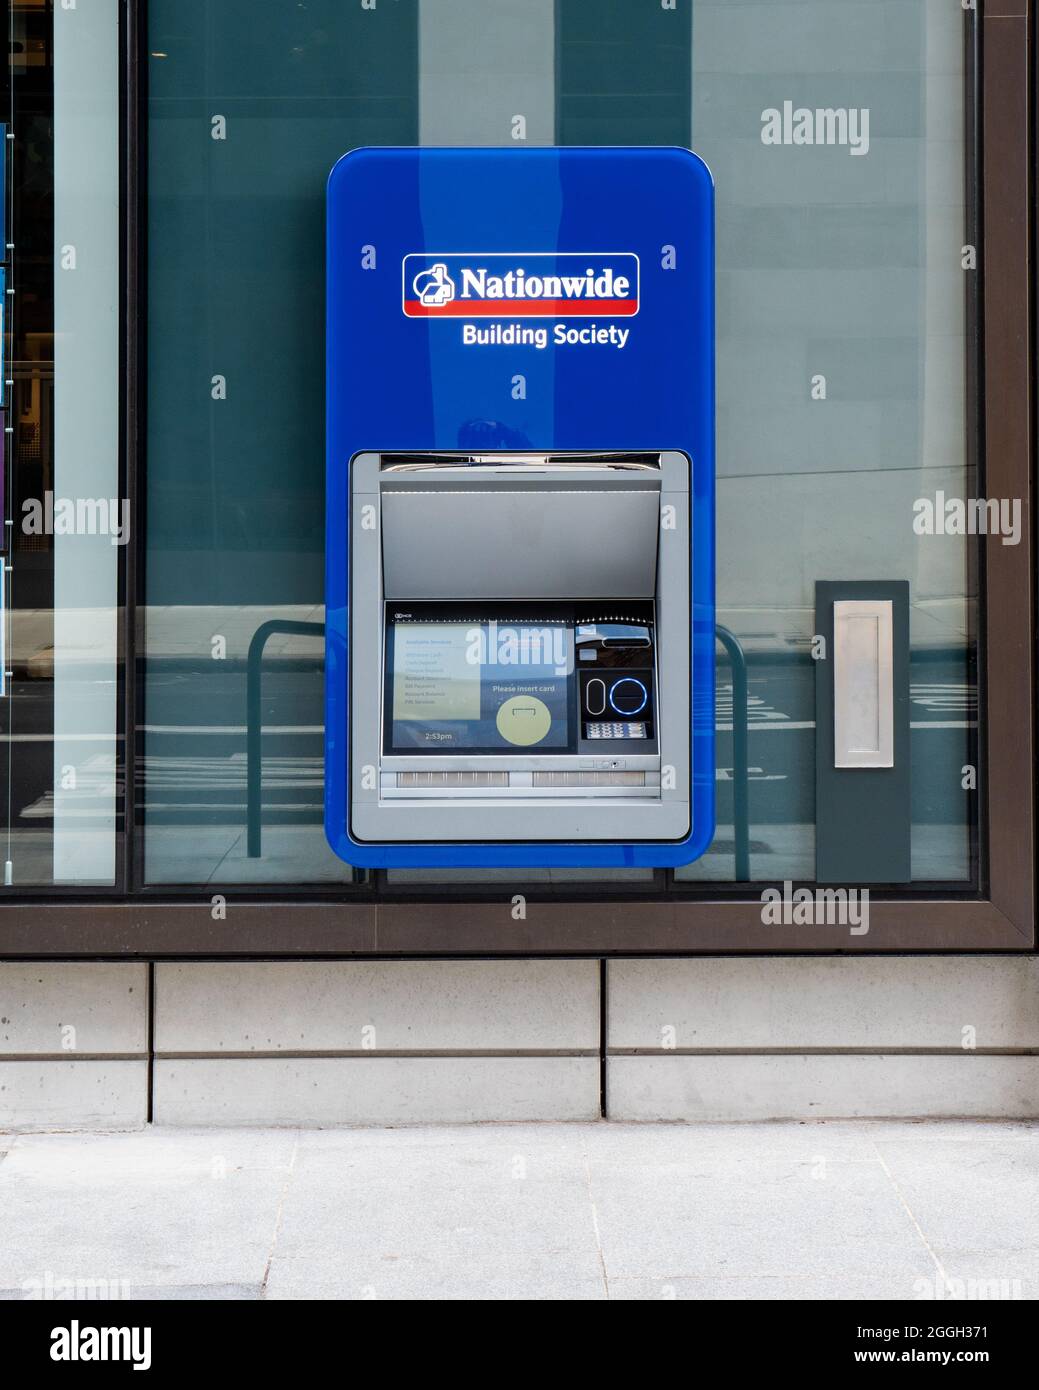 Nationwide Building Society Geldautomat. Ein Geldautomat, der von Nationwide, einer führenden britischen High-Street-Bank, betrieben wird. Stockfoto